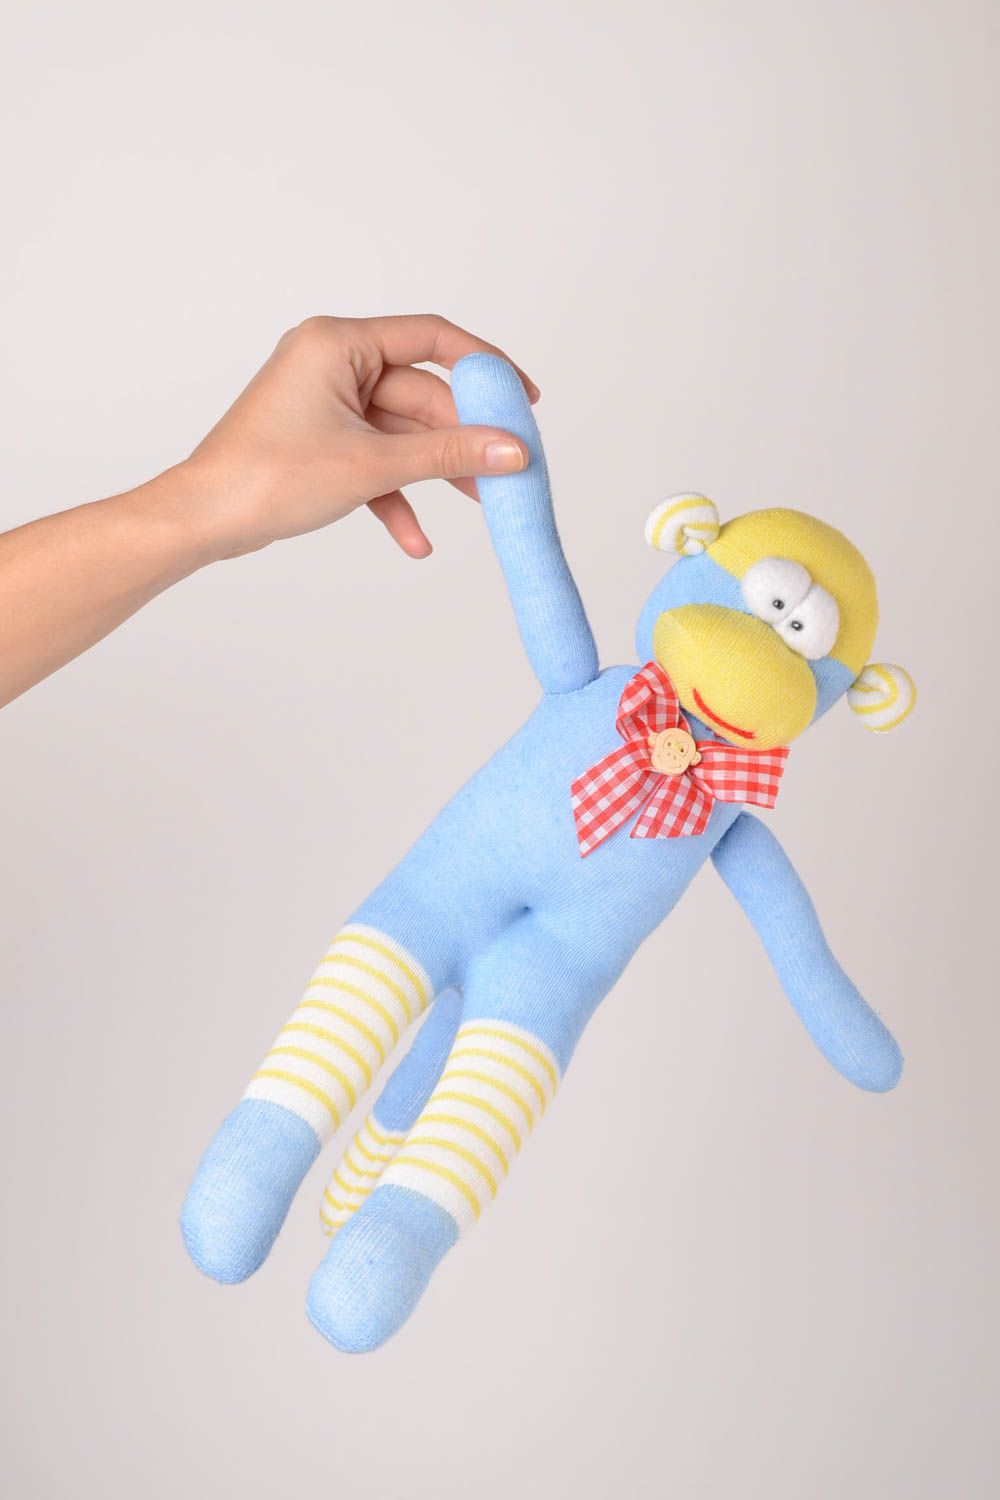 Kinder Spielzeug handgeschaffen Affe Kuscheltier kuscheliges Spielzeug weich foto 2